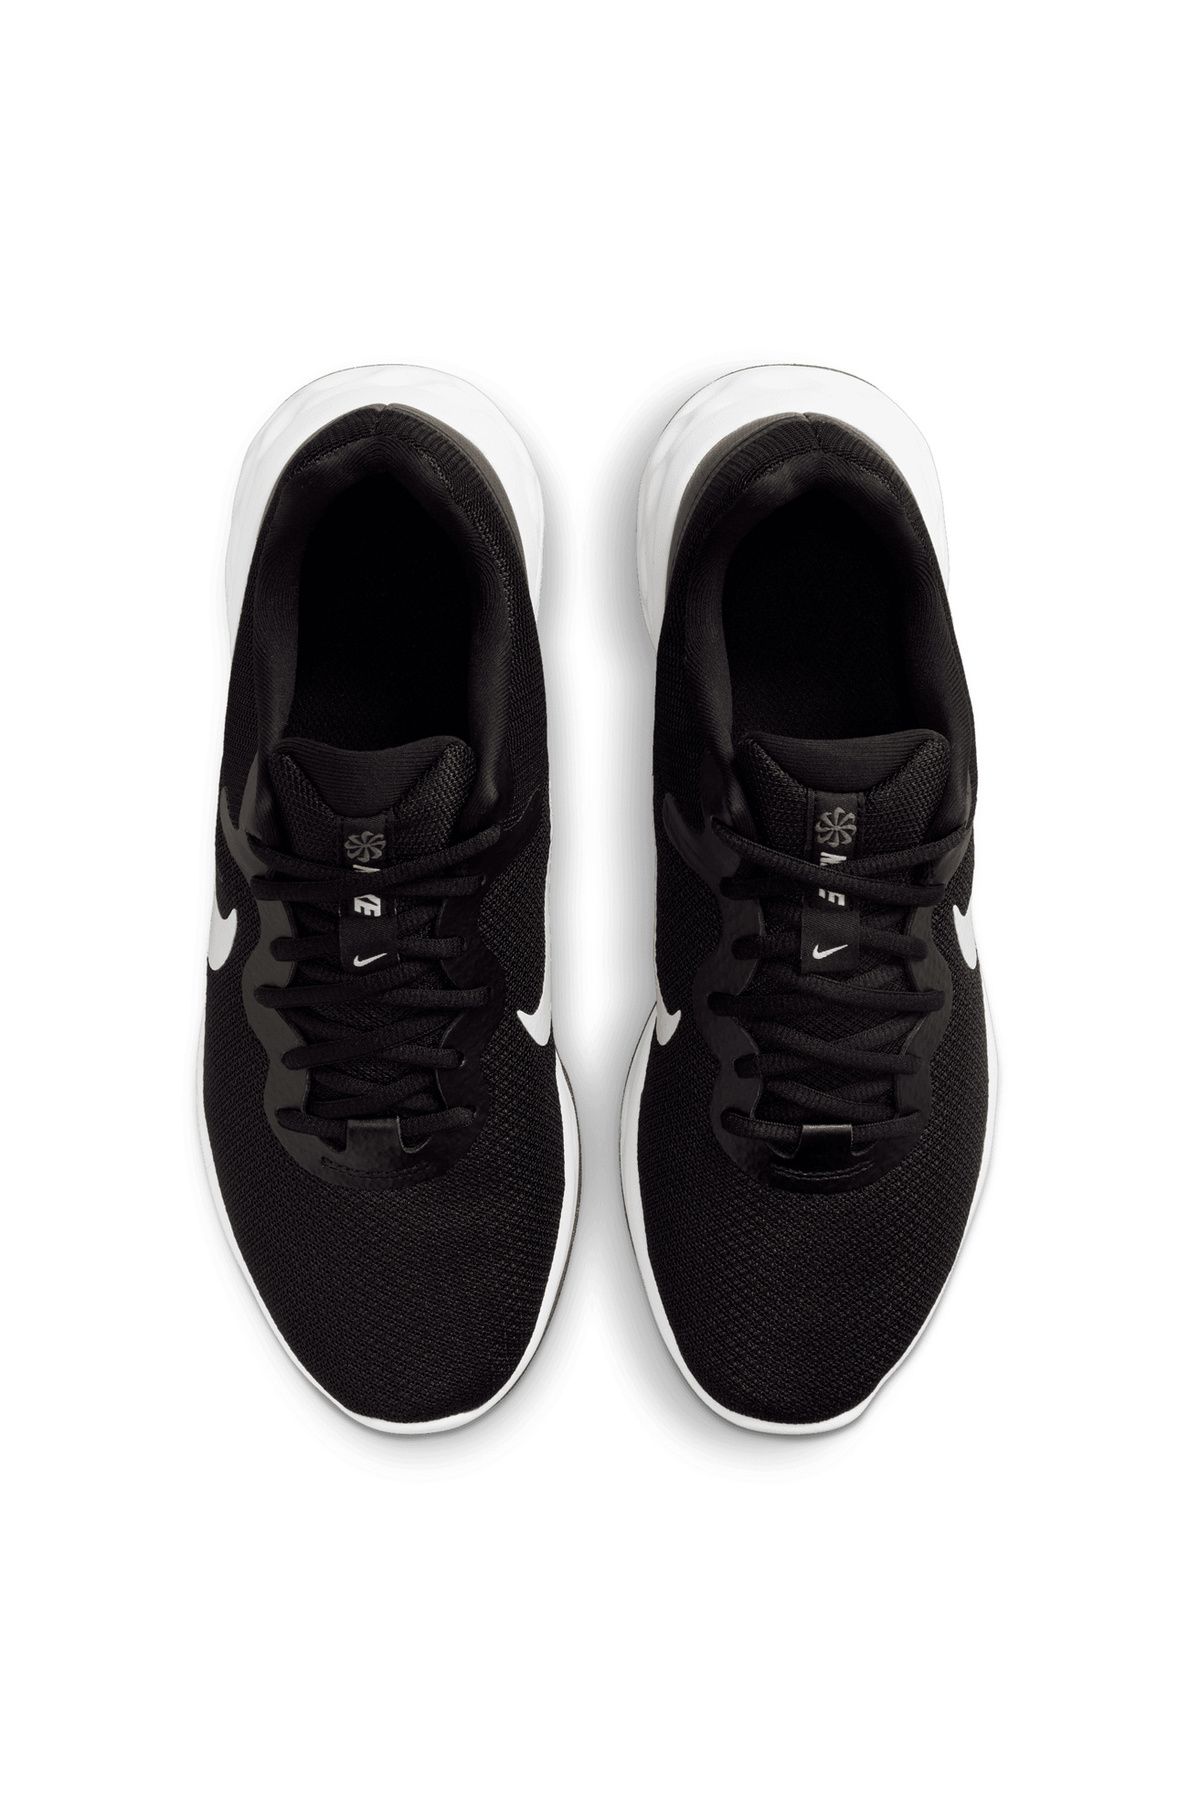 Nike Siyah - Gri - Gümüş Erkek Koşu Ayakkabısı DC3728 003 NIKE REVOLUTION 6 NN